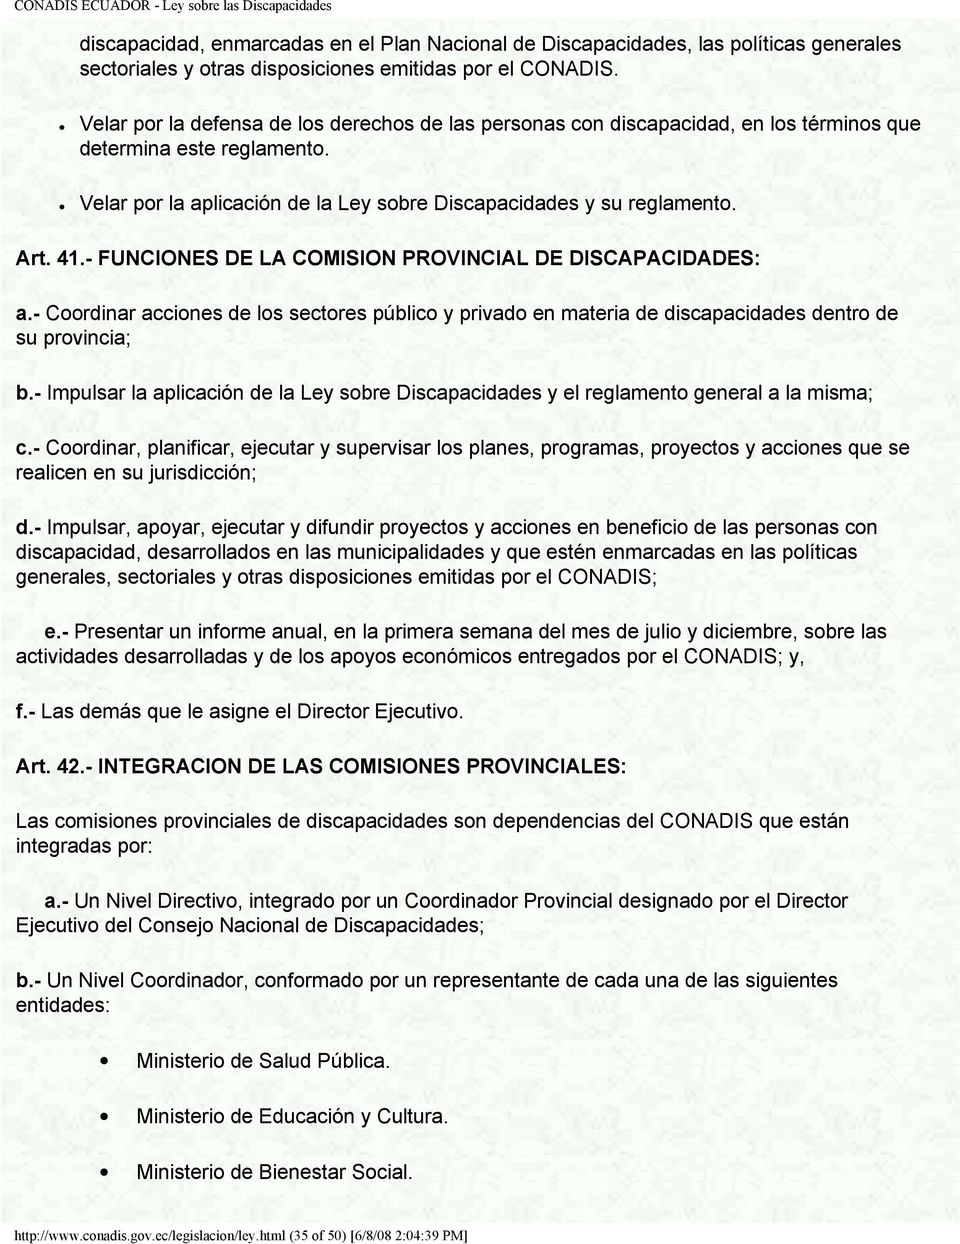 - FUNCIONES DE LA COMISION PROVINCIAL DE DISCAPACIDADES: a.- Coordinar acciones de los sectores público y privado en materia de discapacidades dentro de su provincia; b.